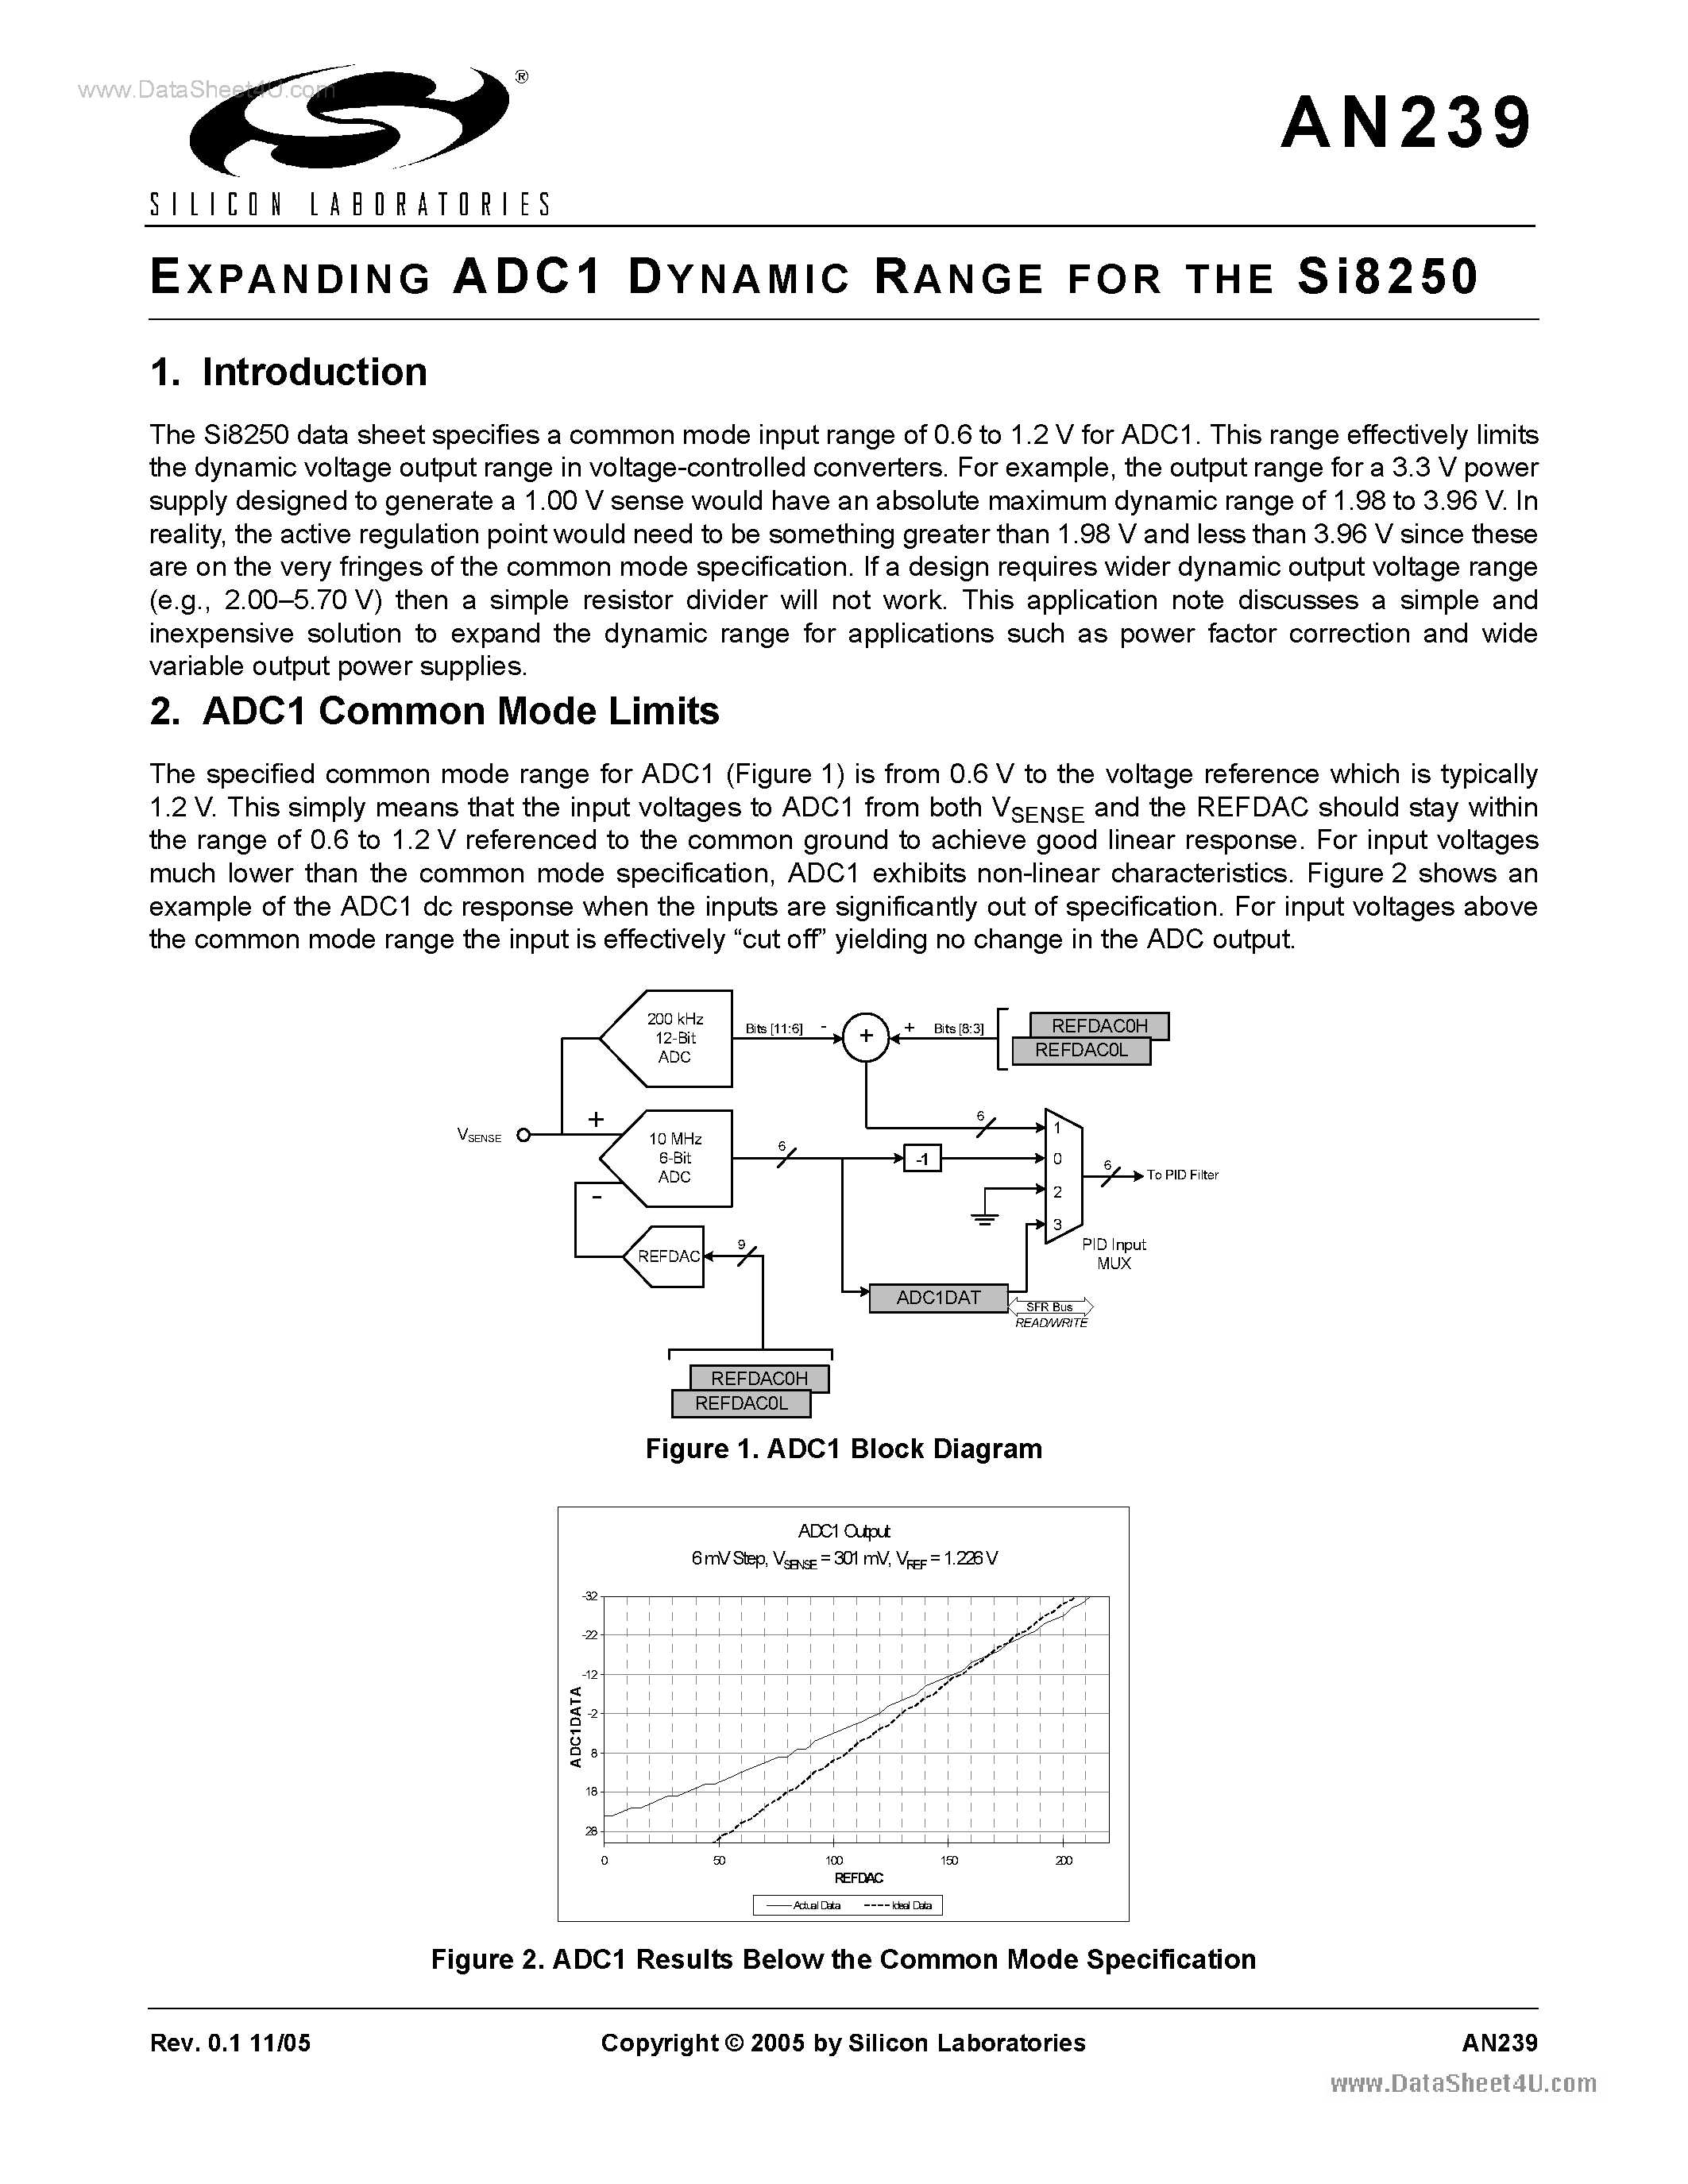 Datasheet AN239 - Expanding ADC1 Dyanmic Range page 1